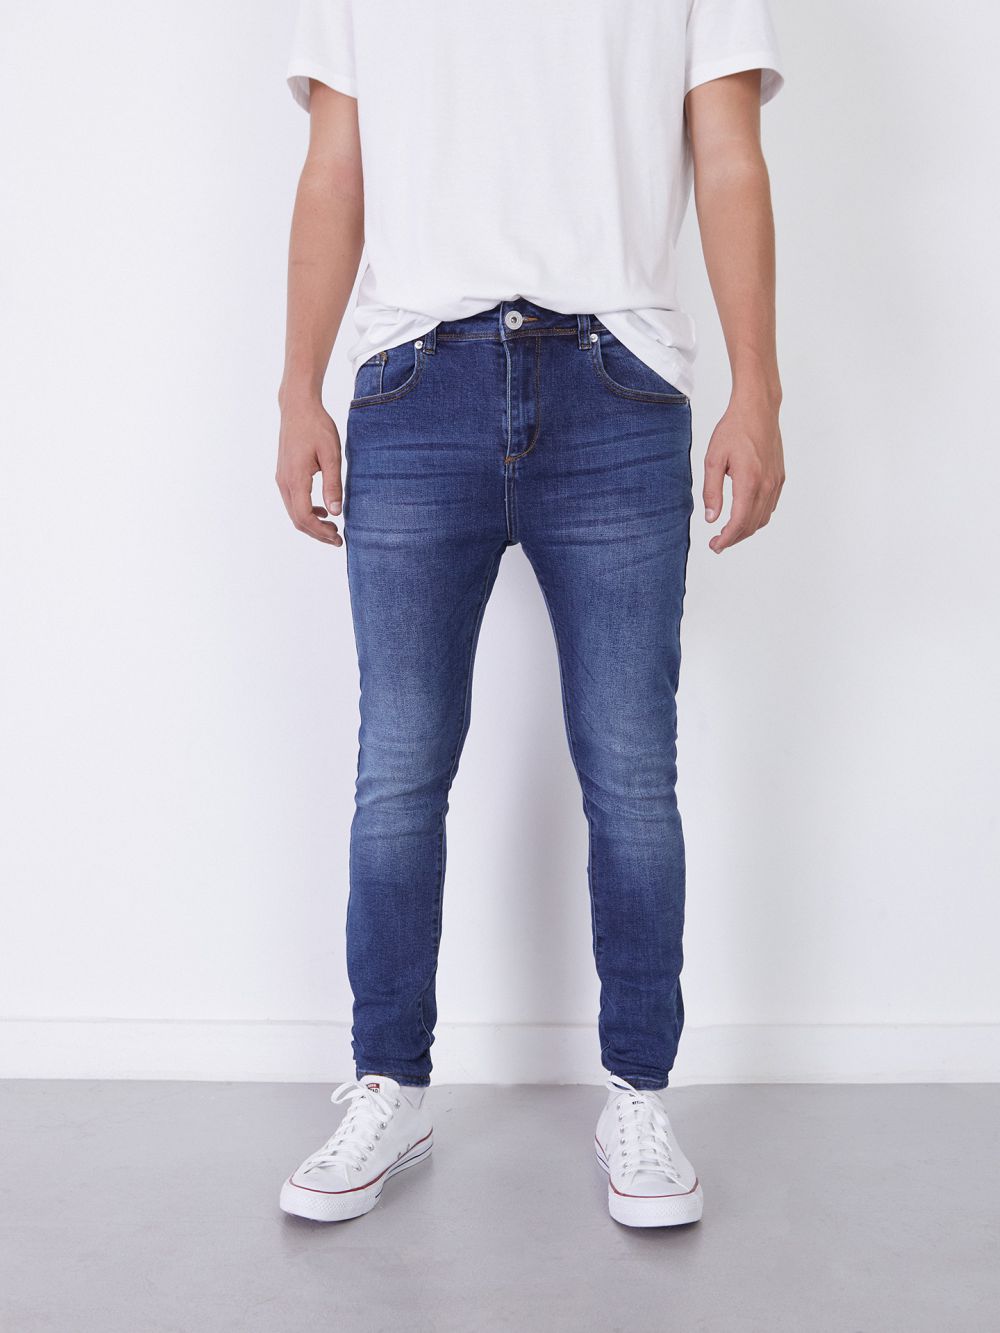 ג’ינס DANIEL Super Skinny כחול מכובס